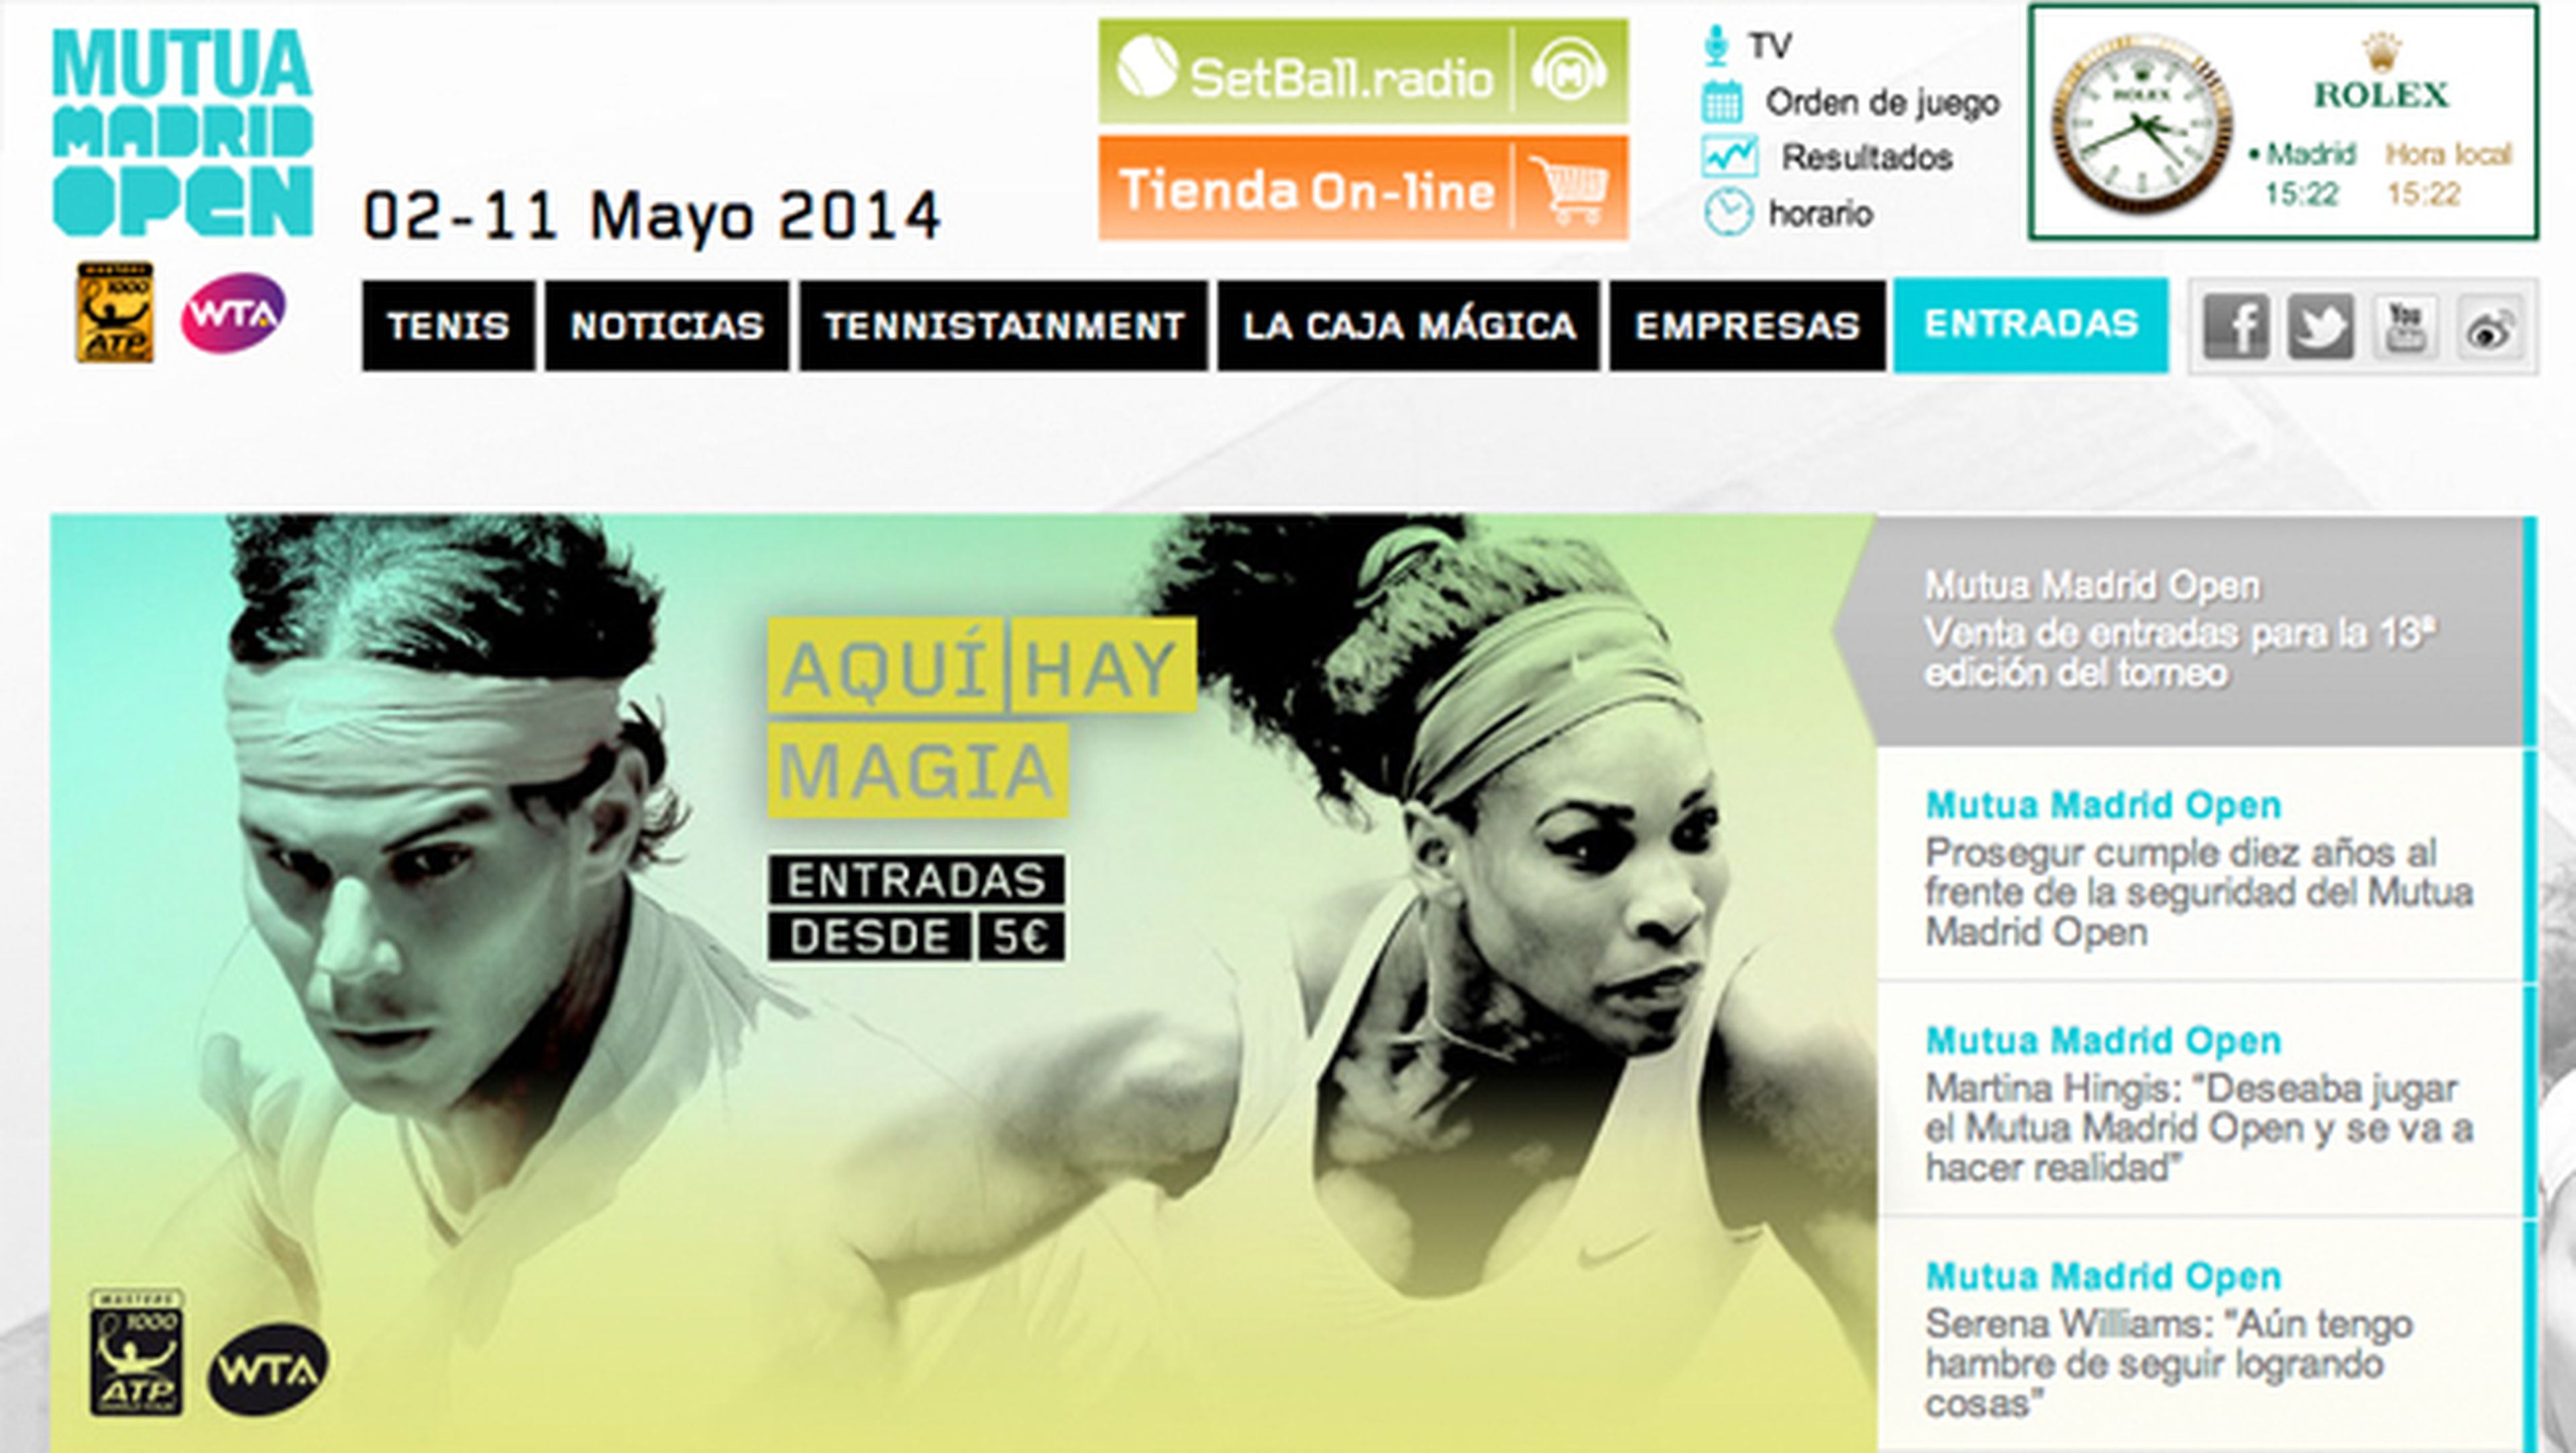 Dónde comprar entradas online para el Mutua Madrid Open de tenis 2014